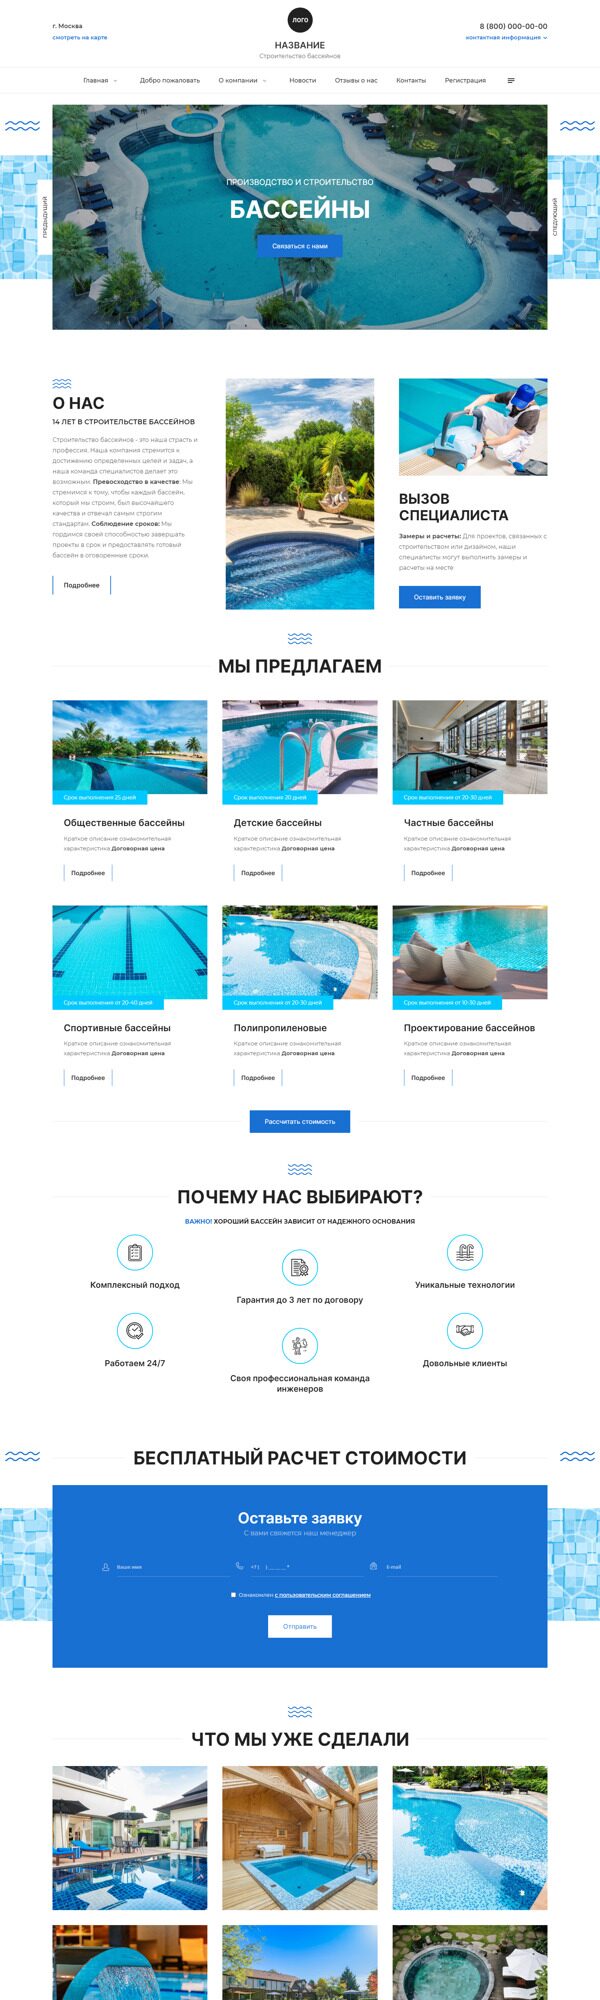 Готовый Сайт-Бизнес № 5471590 - Строительство бассейнов и аквапарков (Десктопная версия)